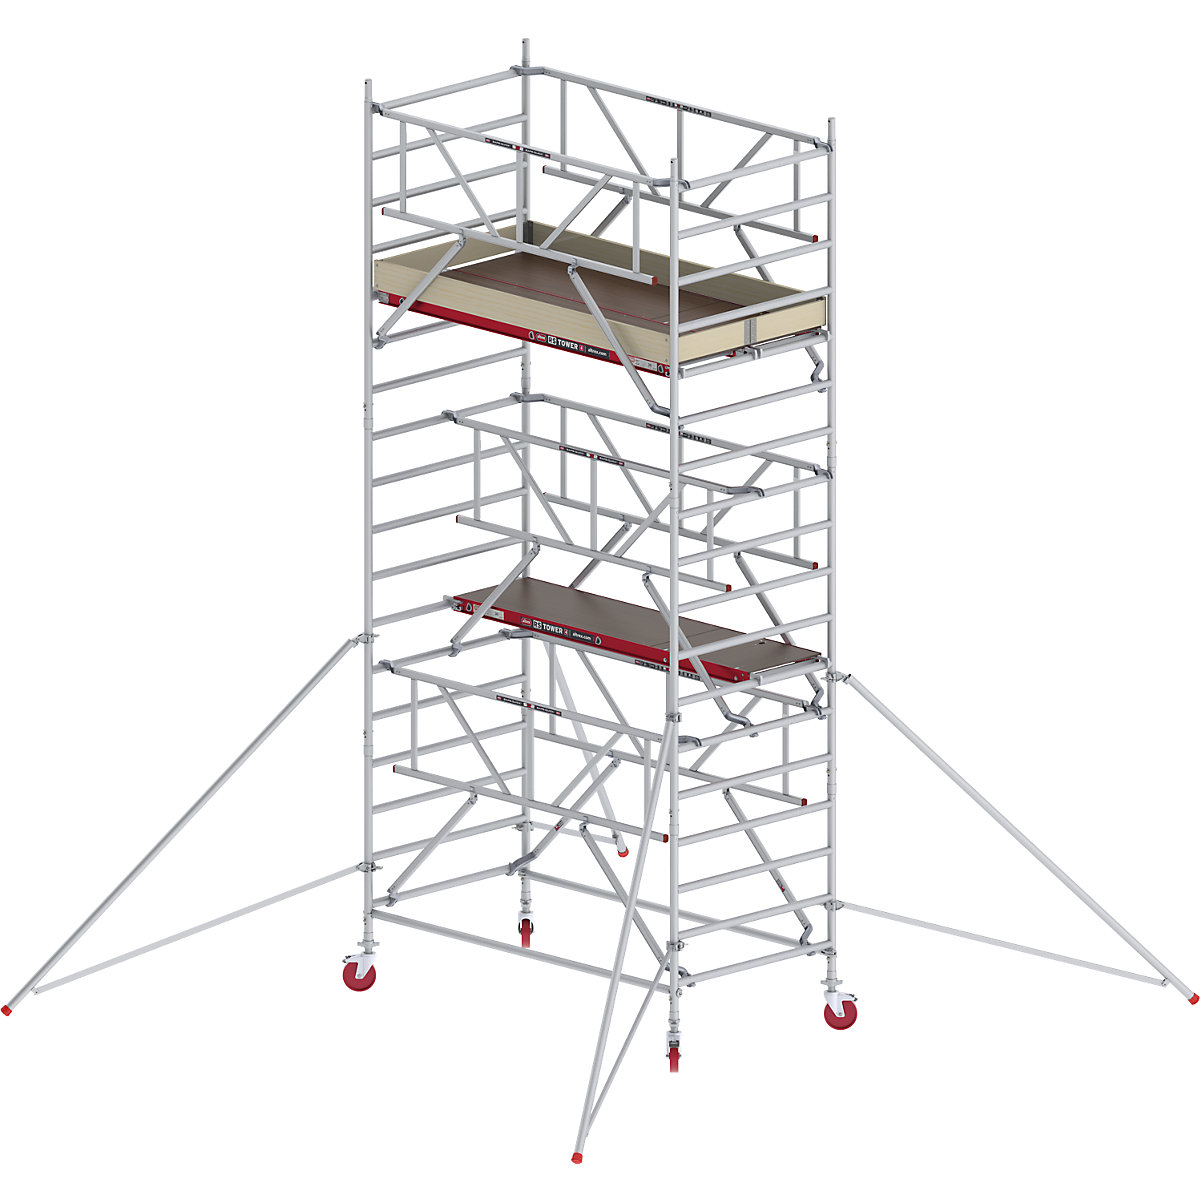 Andaime móvel largo RS TOWER 42 com Safe-Quick® – Altrex, plataforma de madeira, comprimento 2,45 m, altura de trabalho 6,20 m-7